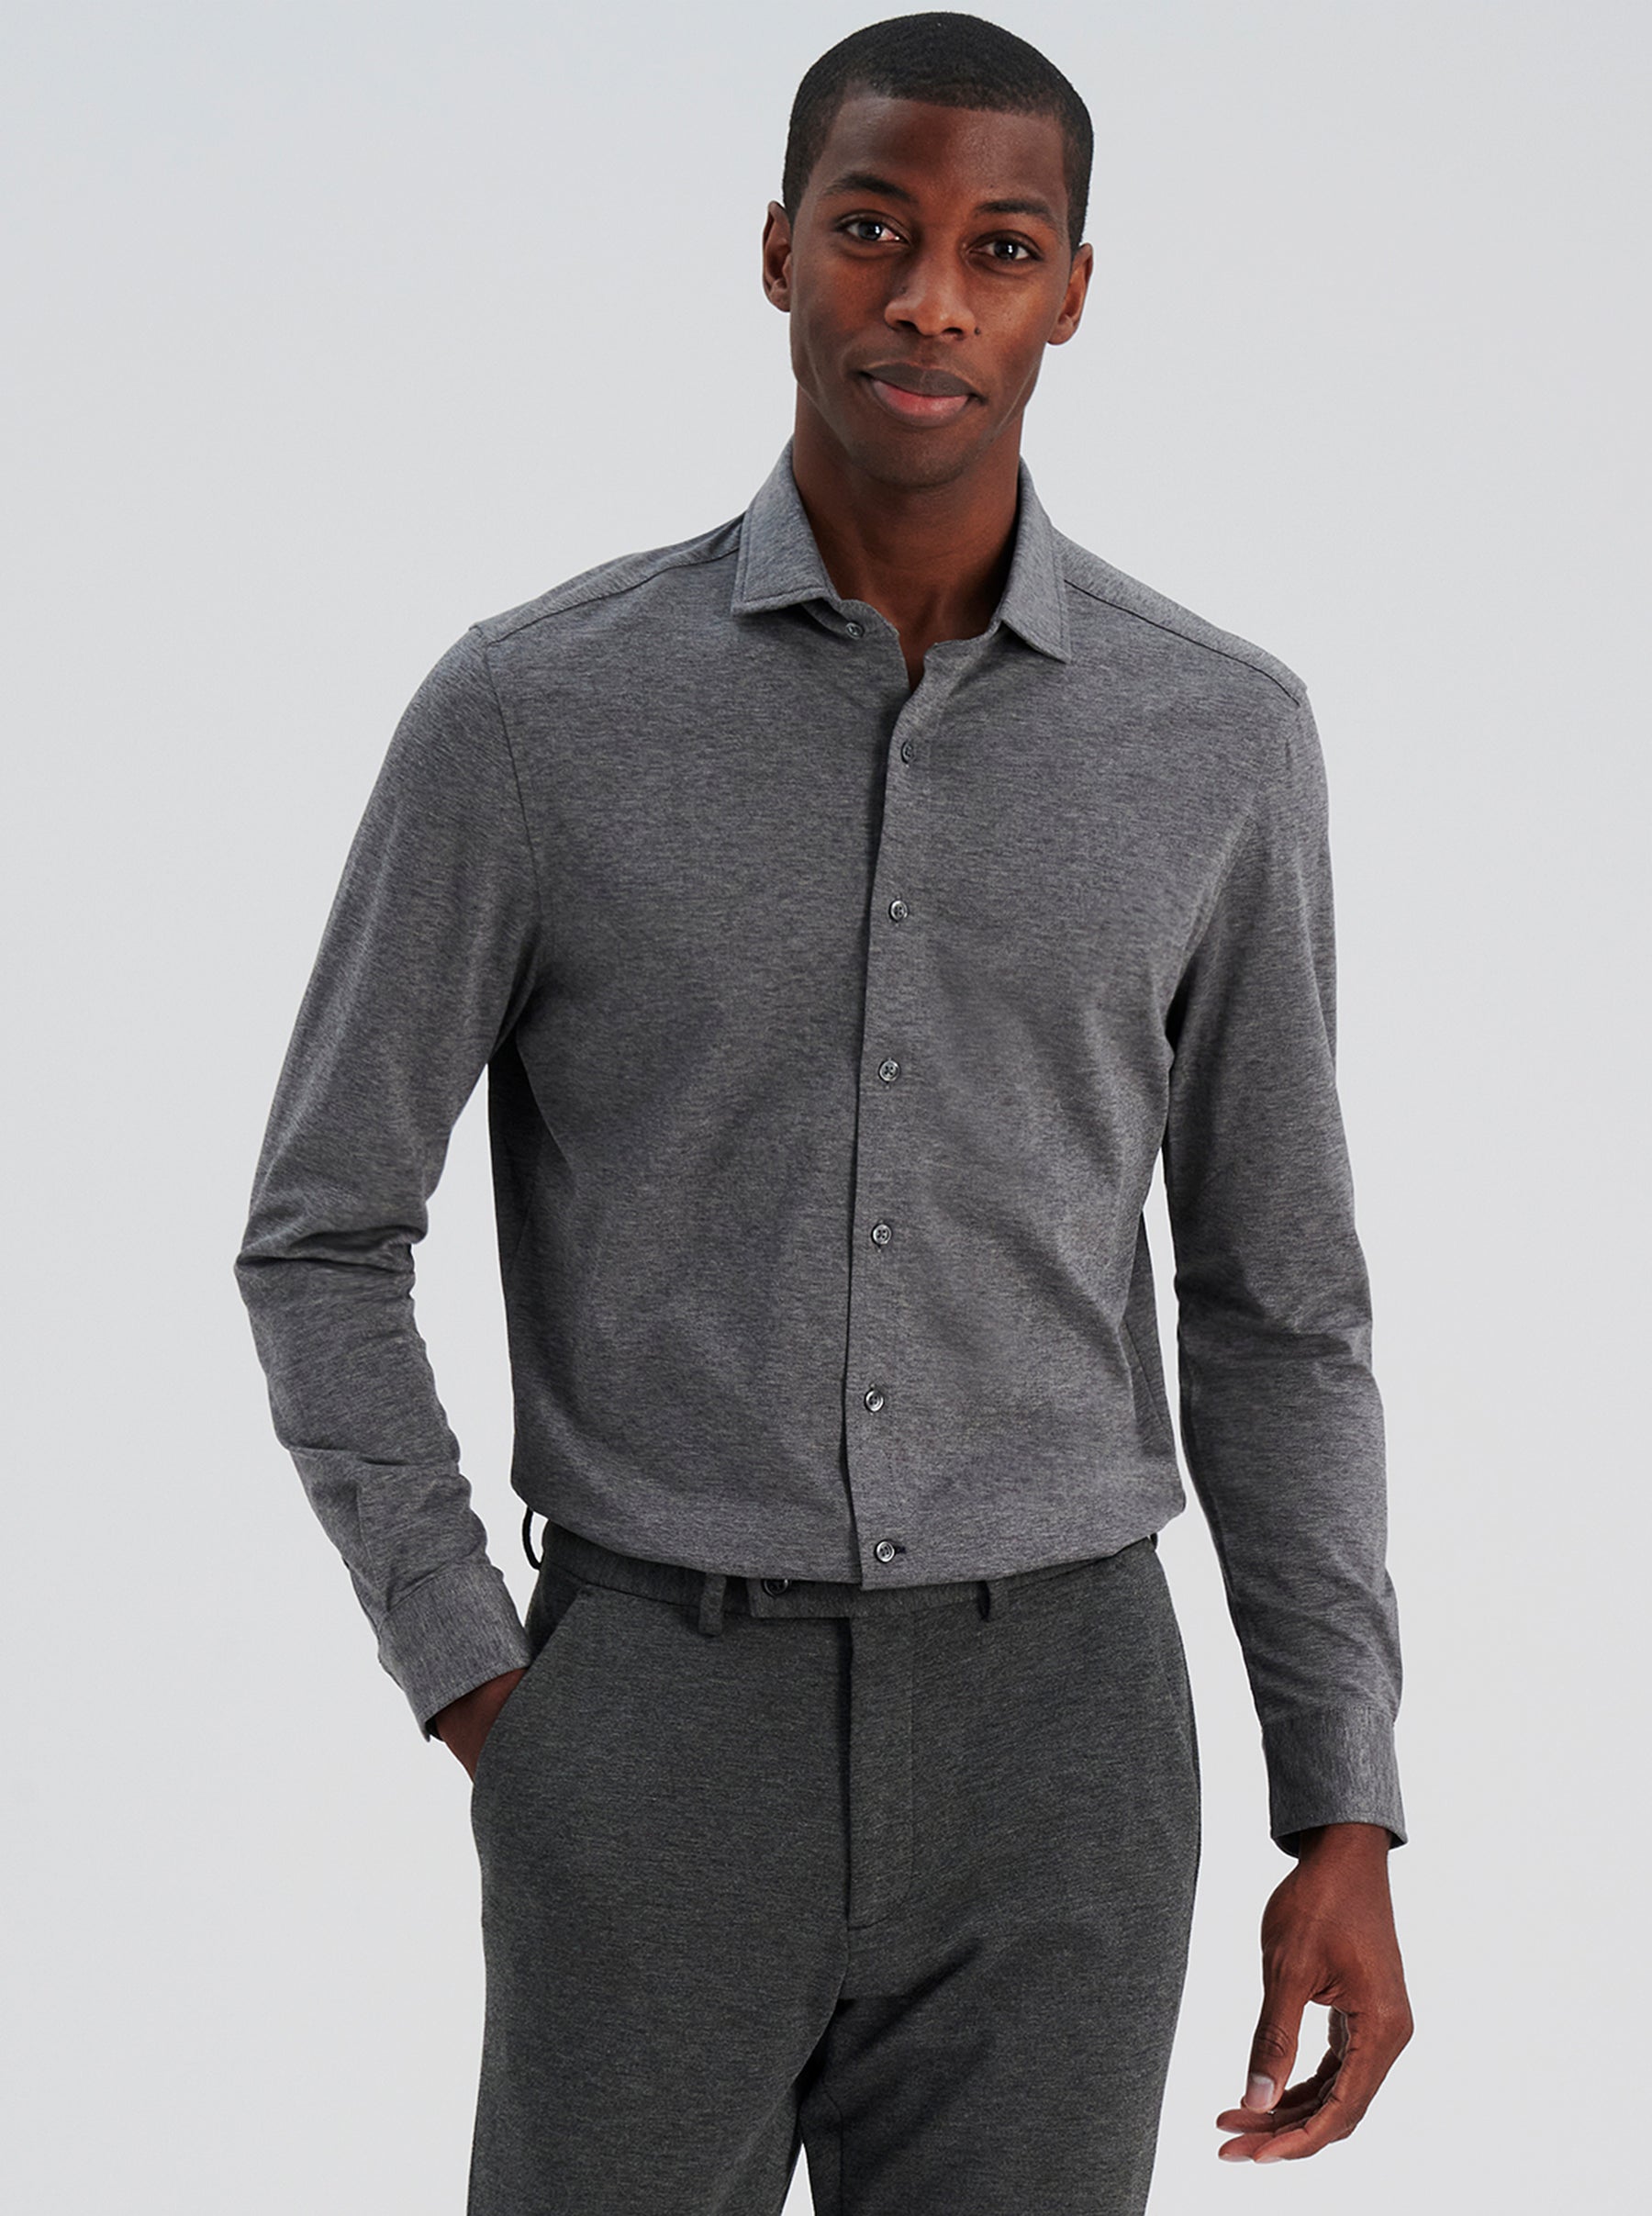 Long Sleeve Knit Shirt, Slim Fit Button Down Men's Shirt, 100% Cotton,  NiceStuff